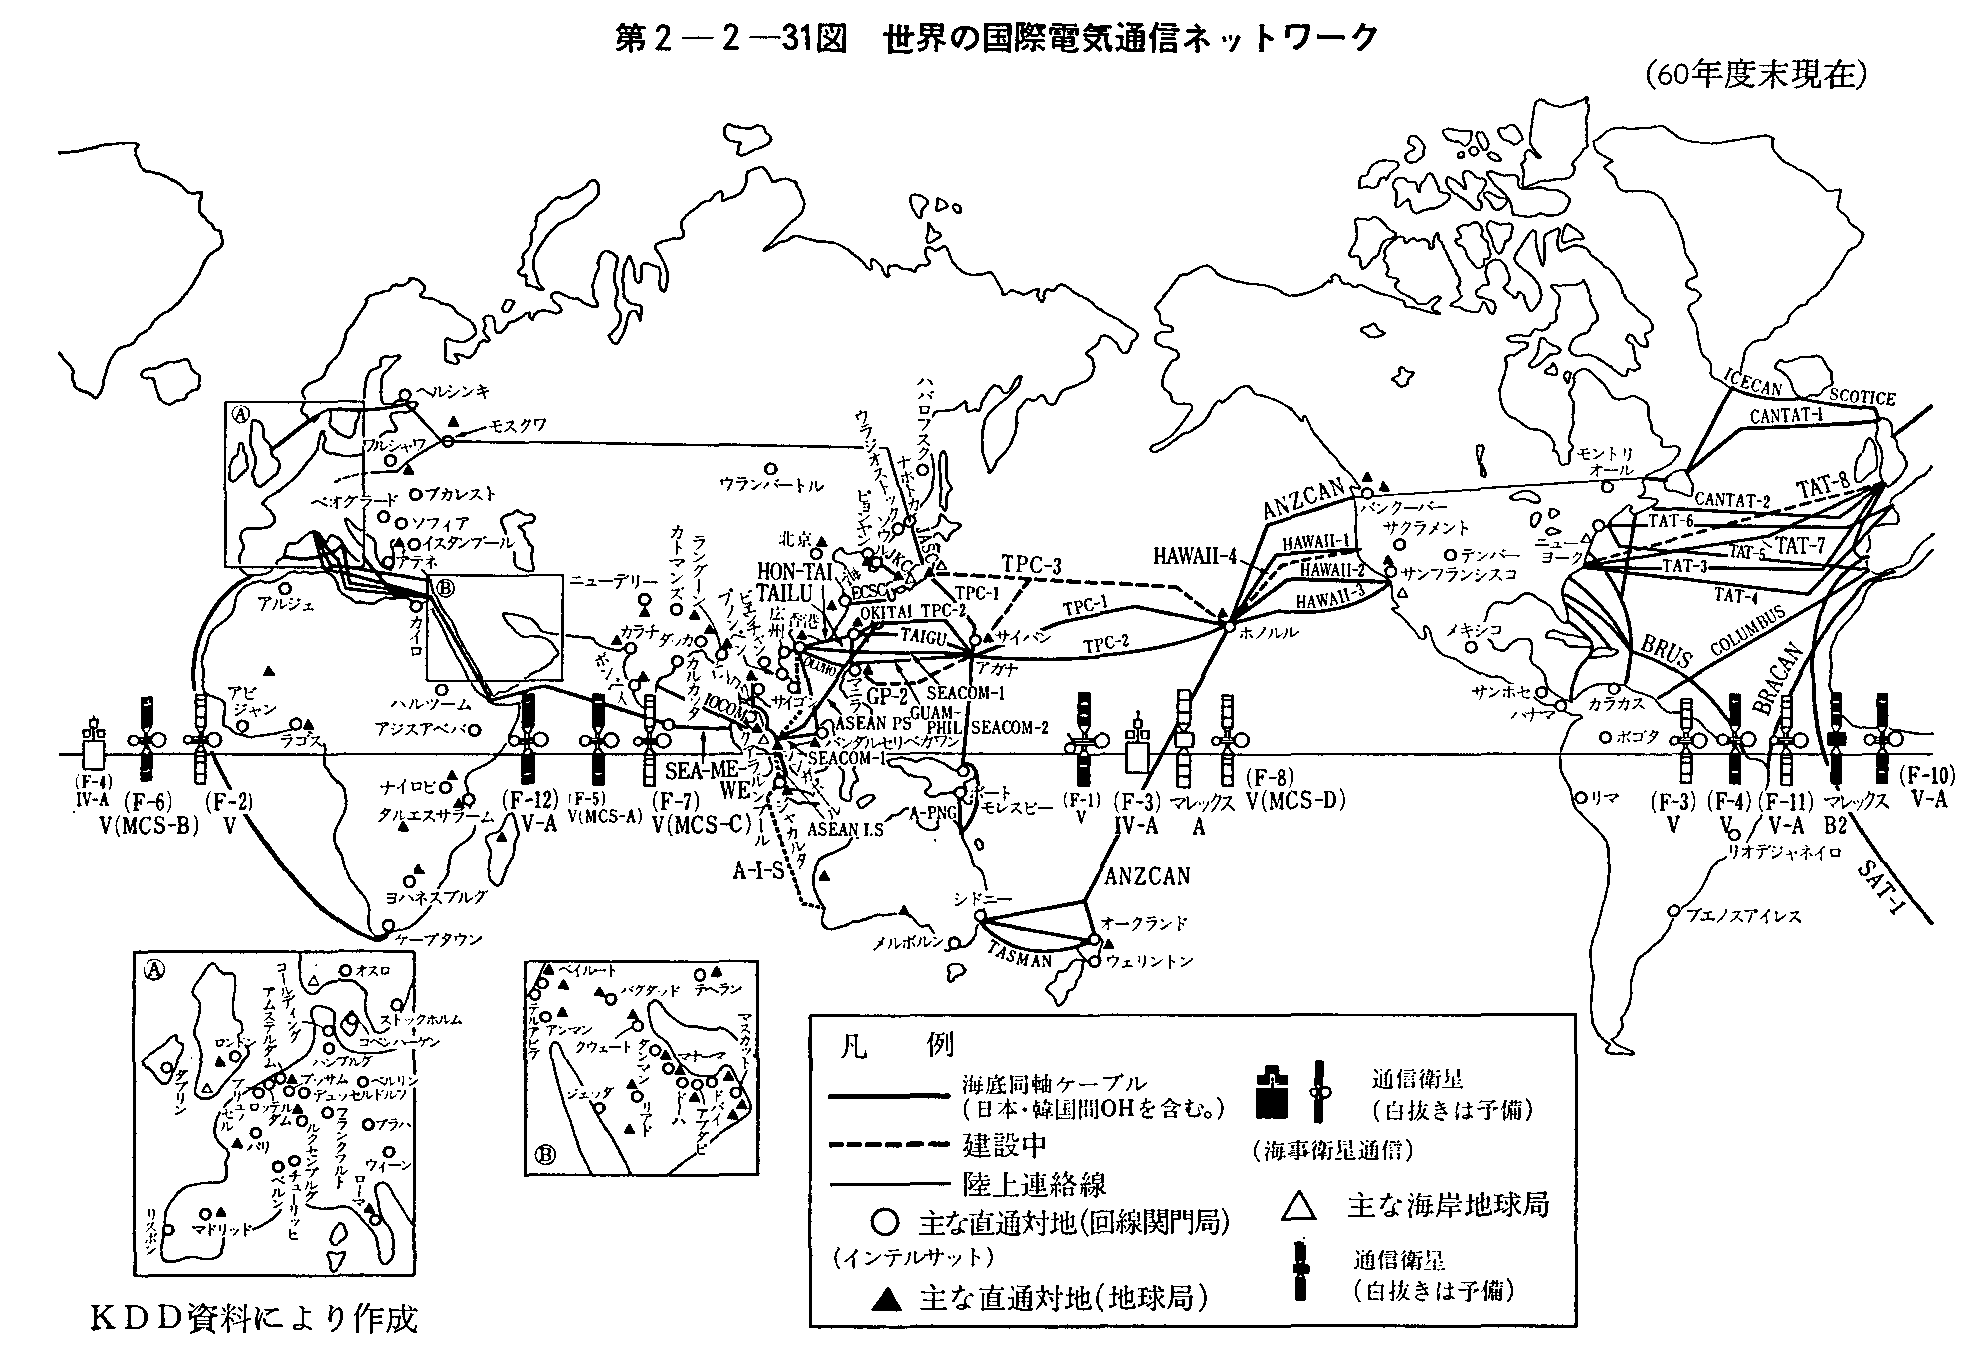 第2-2-31図 世界の国際電気通信ネットワーク(60年度末現在)